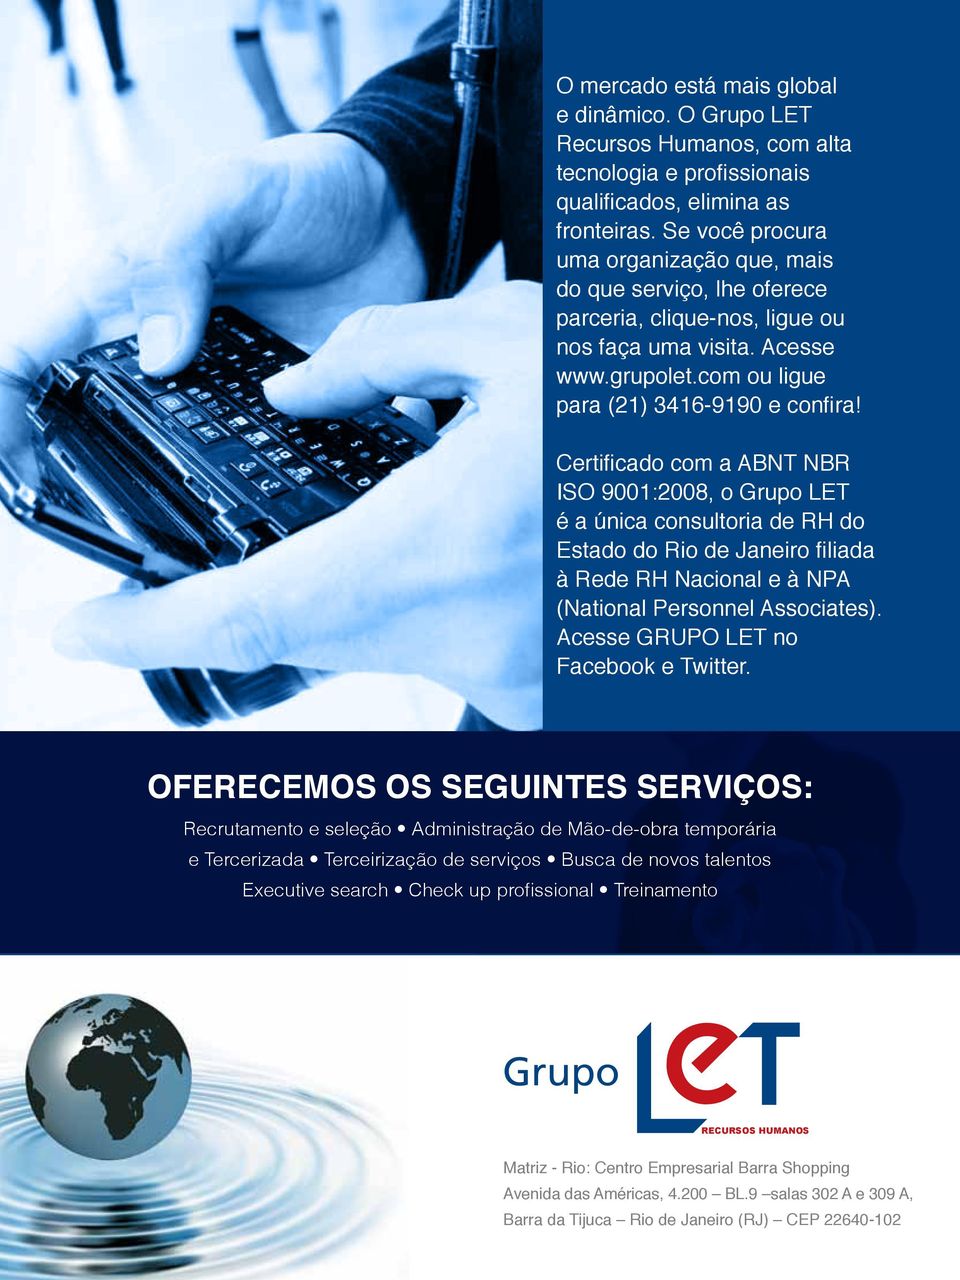 Certificado com a ABNT NBR ISO 9001:2008, o Grupo LET é a única consultoria de RH do Estado do Rio de Janeiro filiada à Rede RH Nacional e à NPA (National Personnel Associates).